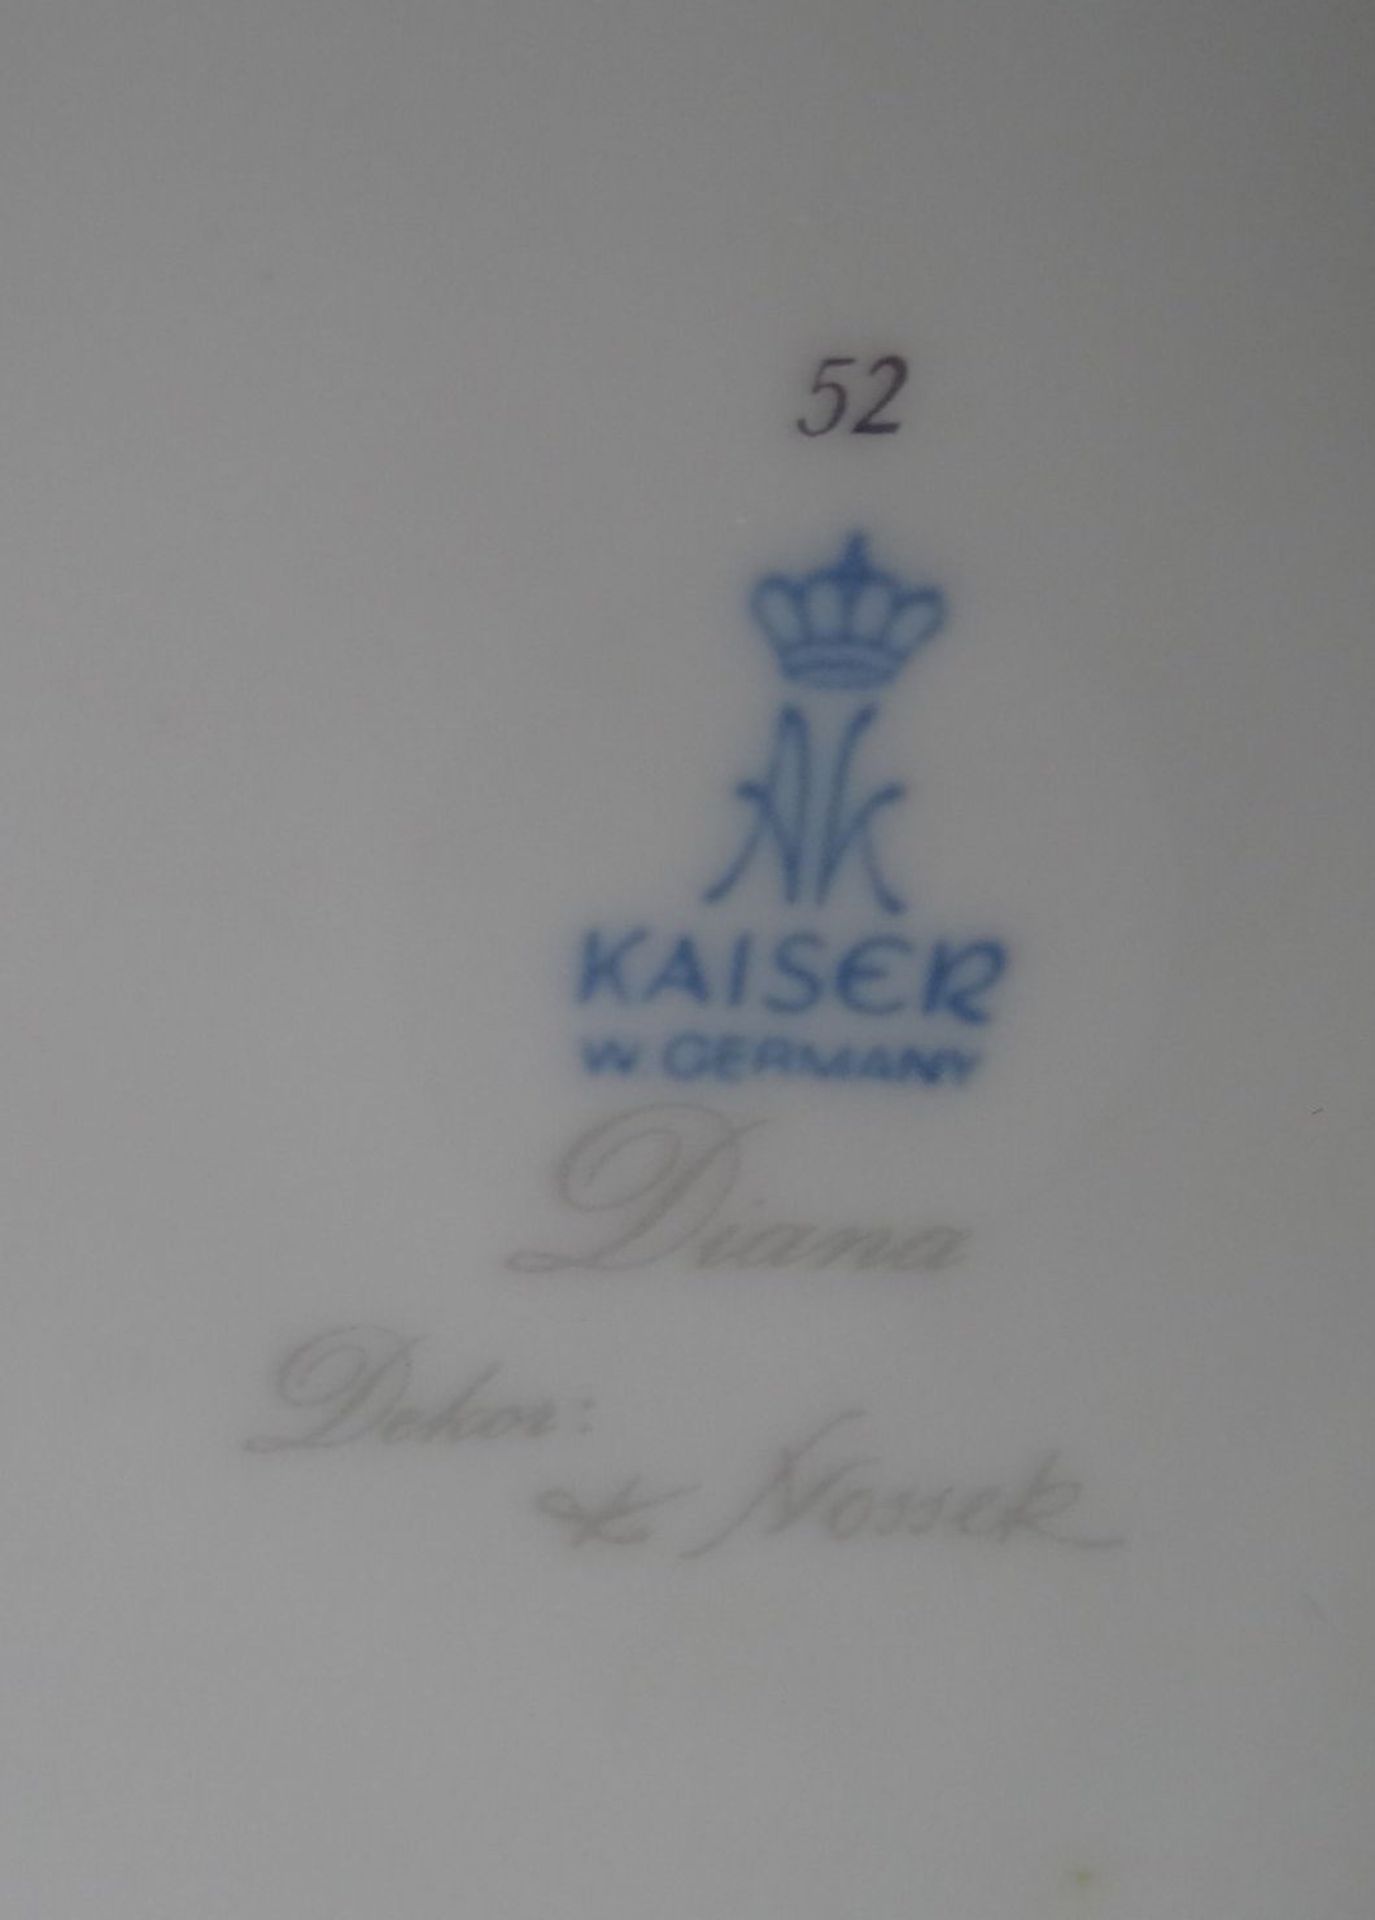 grosse Deckelvase "Kaiser" Dekor Diana, Entw. K.Nossack, H-32 cm - Bild 8 aus 8